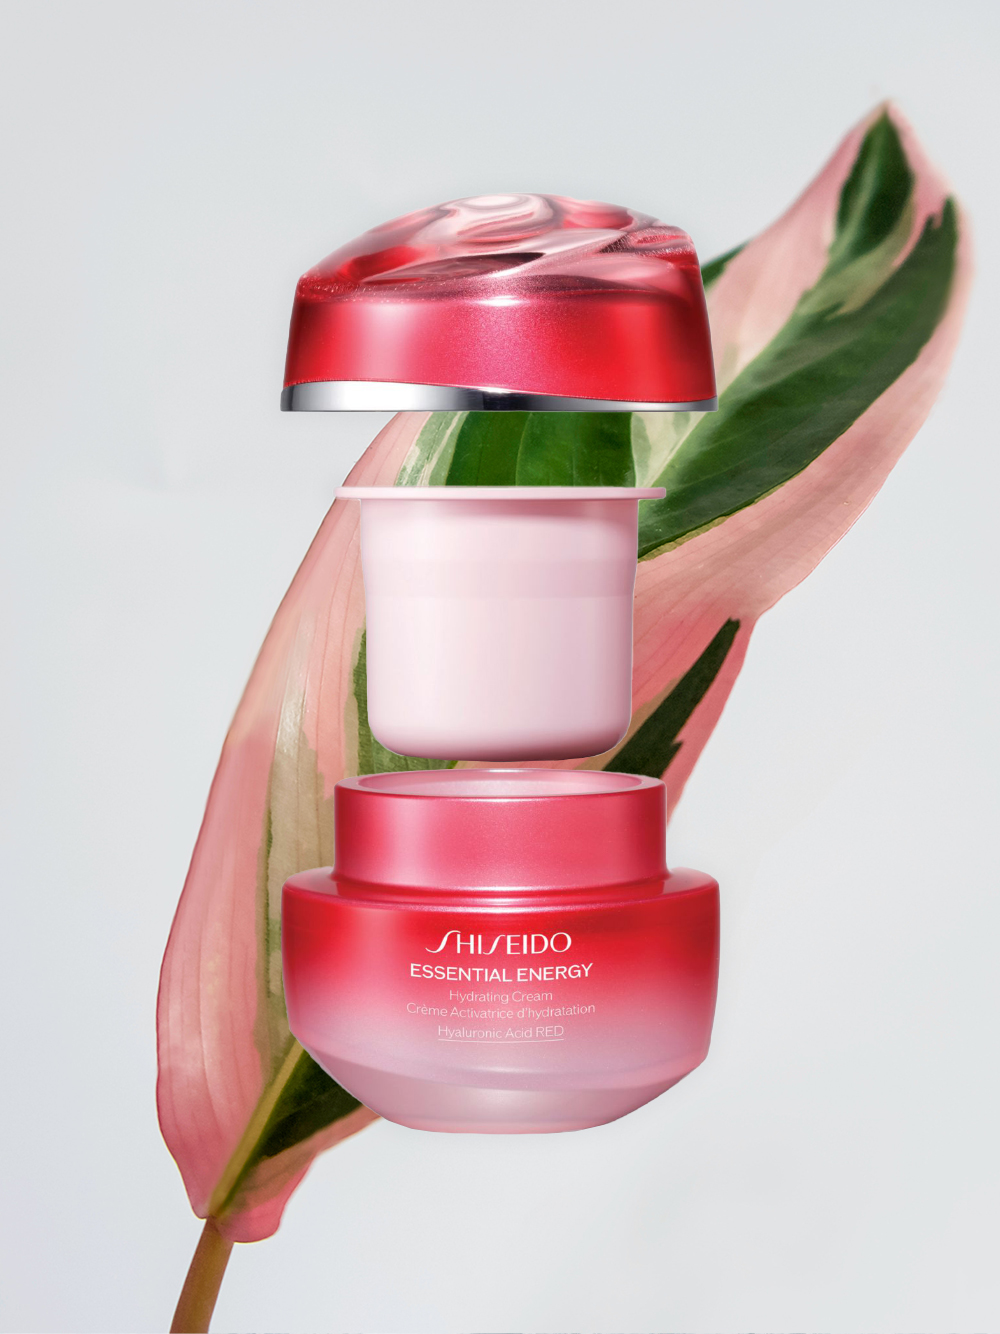 Shiseido-ийн хүн орхоодойн үндэс, гиалуроны хүчил агуулсан “Essential Energy” цуврал шинэчлэгдлээ (фото 6)